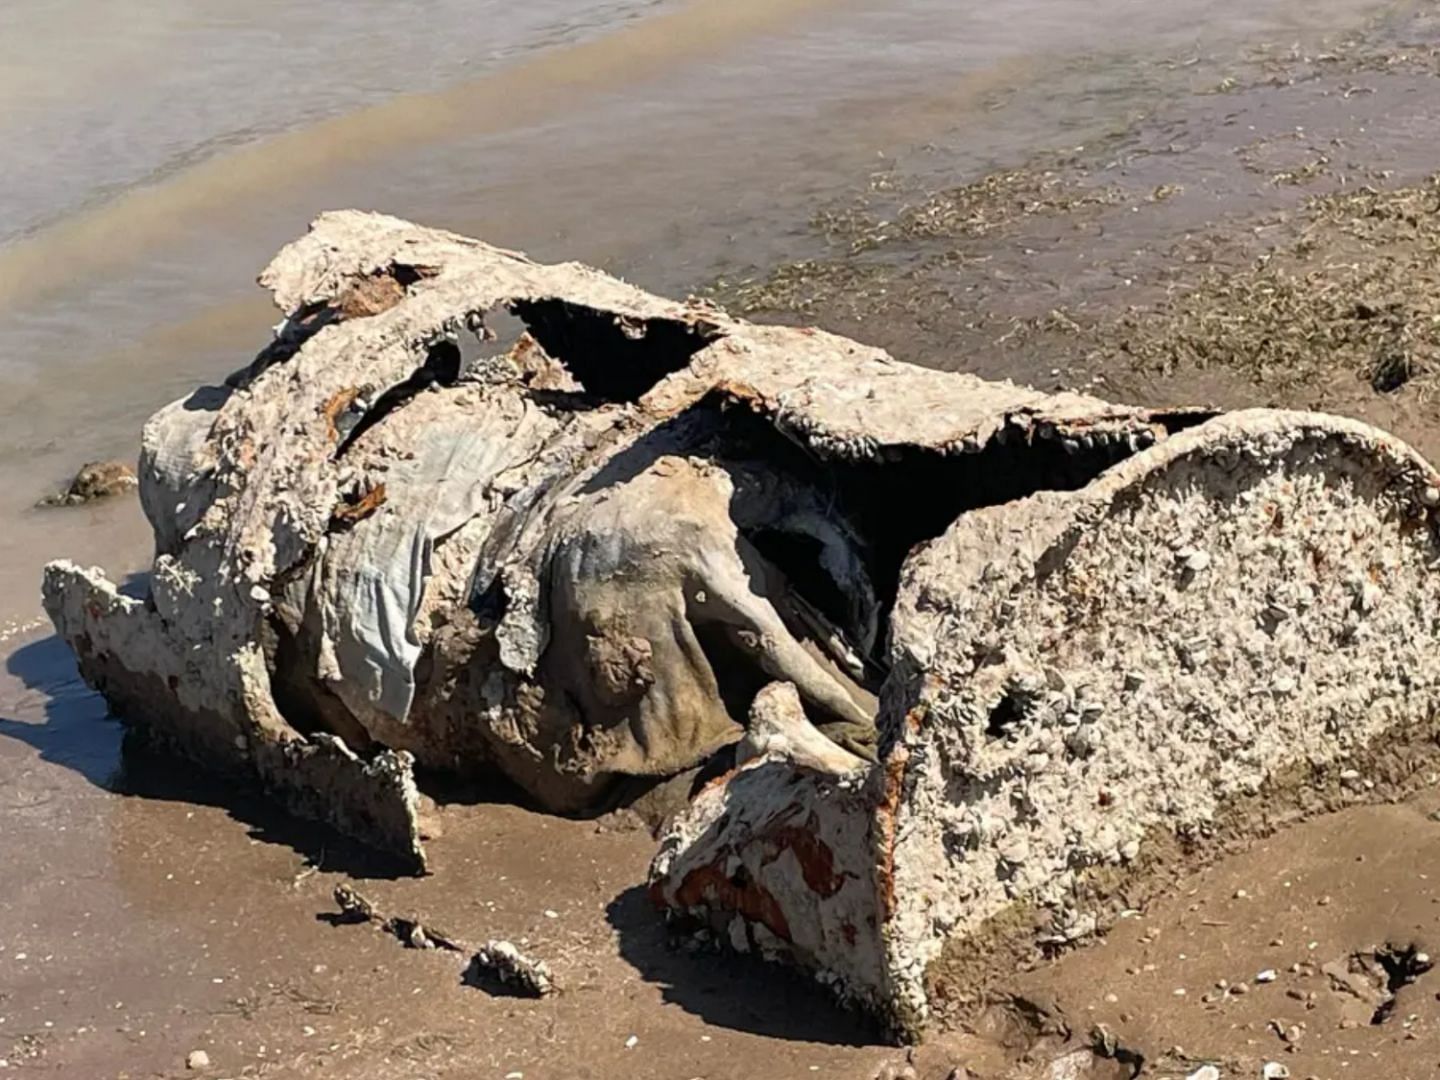 Skeletal  remains were found inside a barrel along the receding shoreline of Lake Mead (Image via Shawna Elizabeth Hollister)